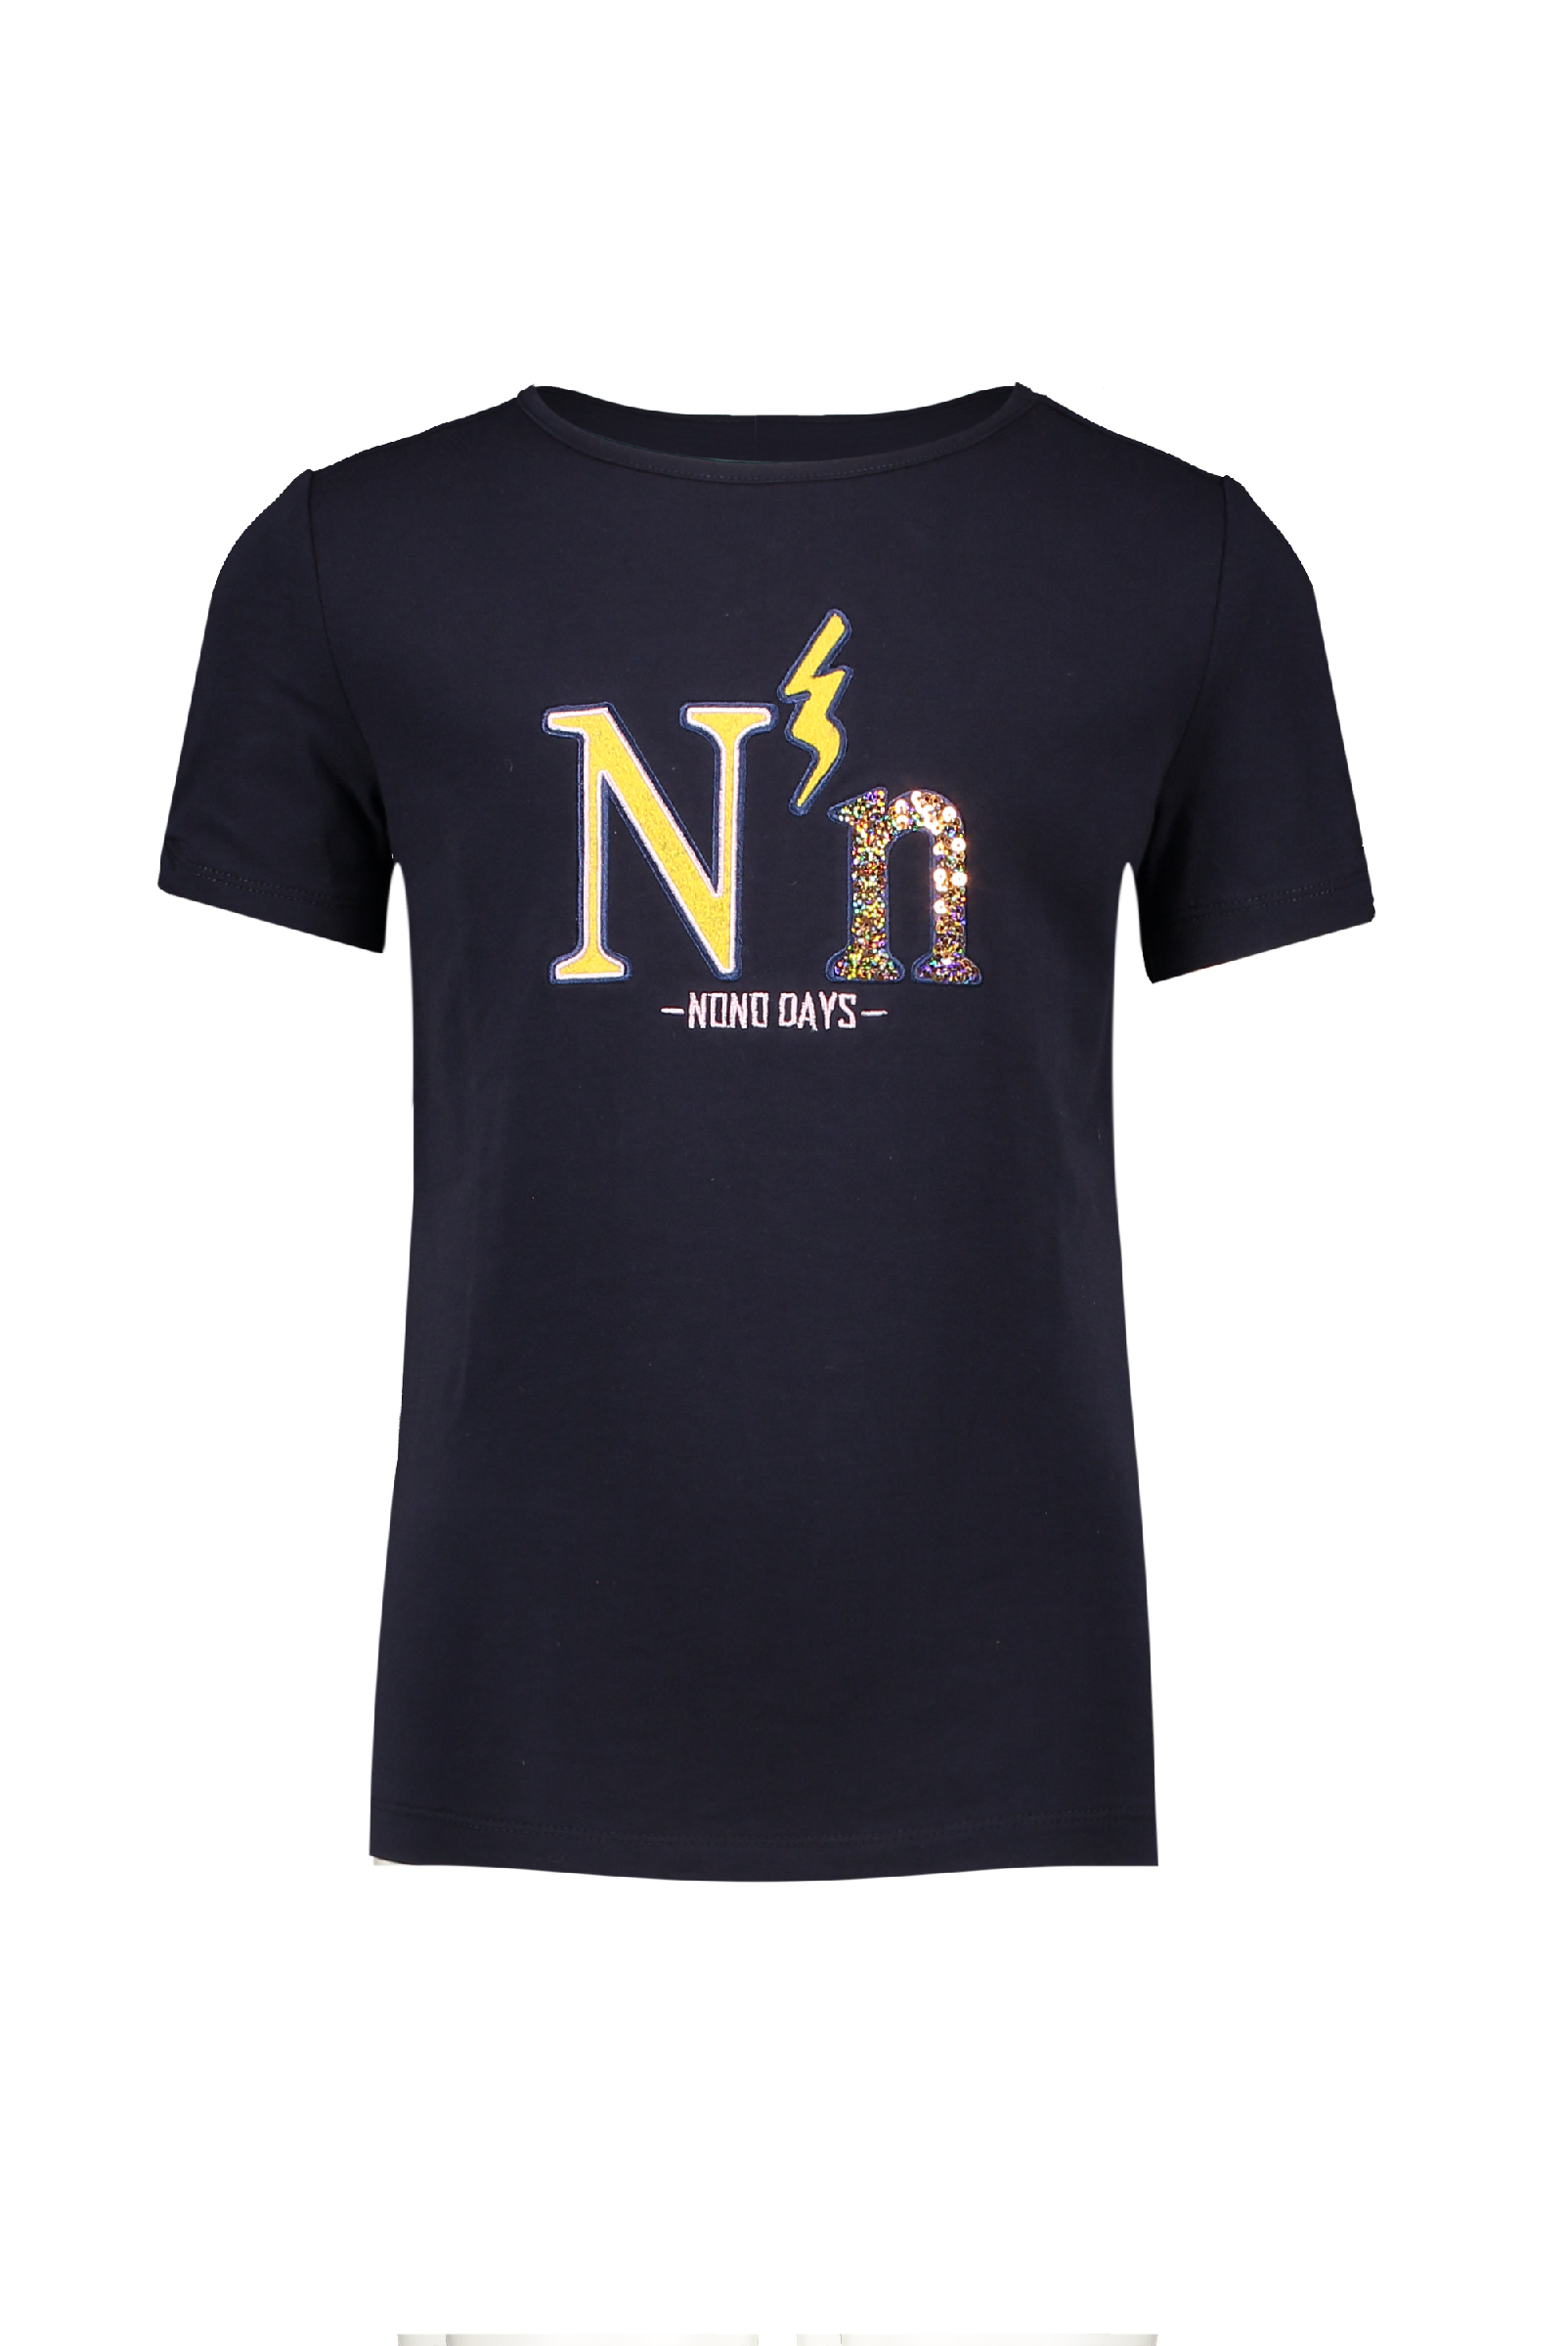 Meisjes Kua t-shirt NoNo days van NoNo in de kleur Navy Blazer in maat 146, 152.